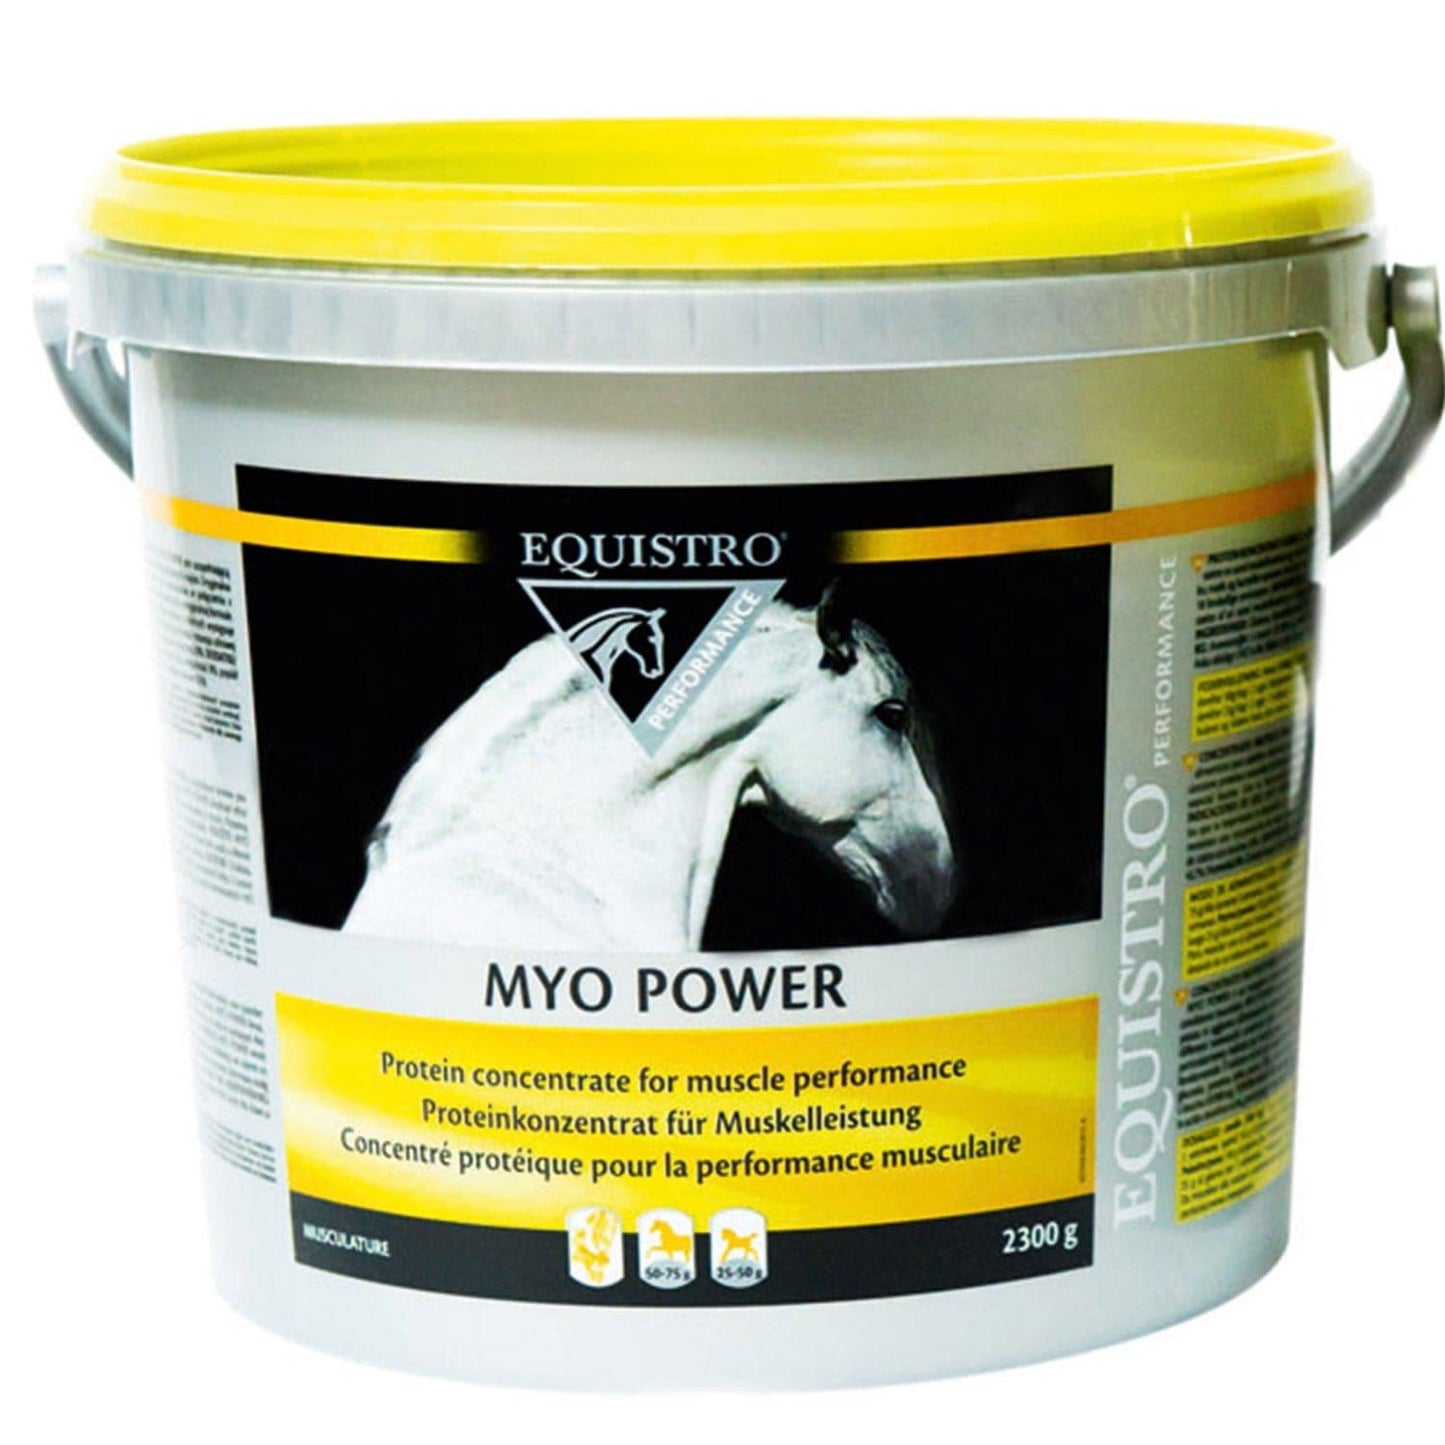 Myo Power - Equistro - Darreichungsform:Granulat, Ergänzungsfuttermittel:Muskulatur, Ergänzungsfuttermittel:Zucht & Aufzucht, Hersteller:Equisto, Tierart:Pferd - Marigin AG Onlineshop für Tierbedarf